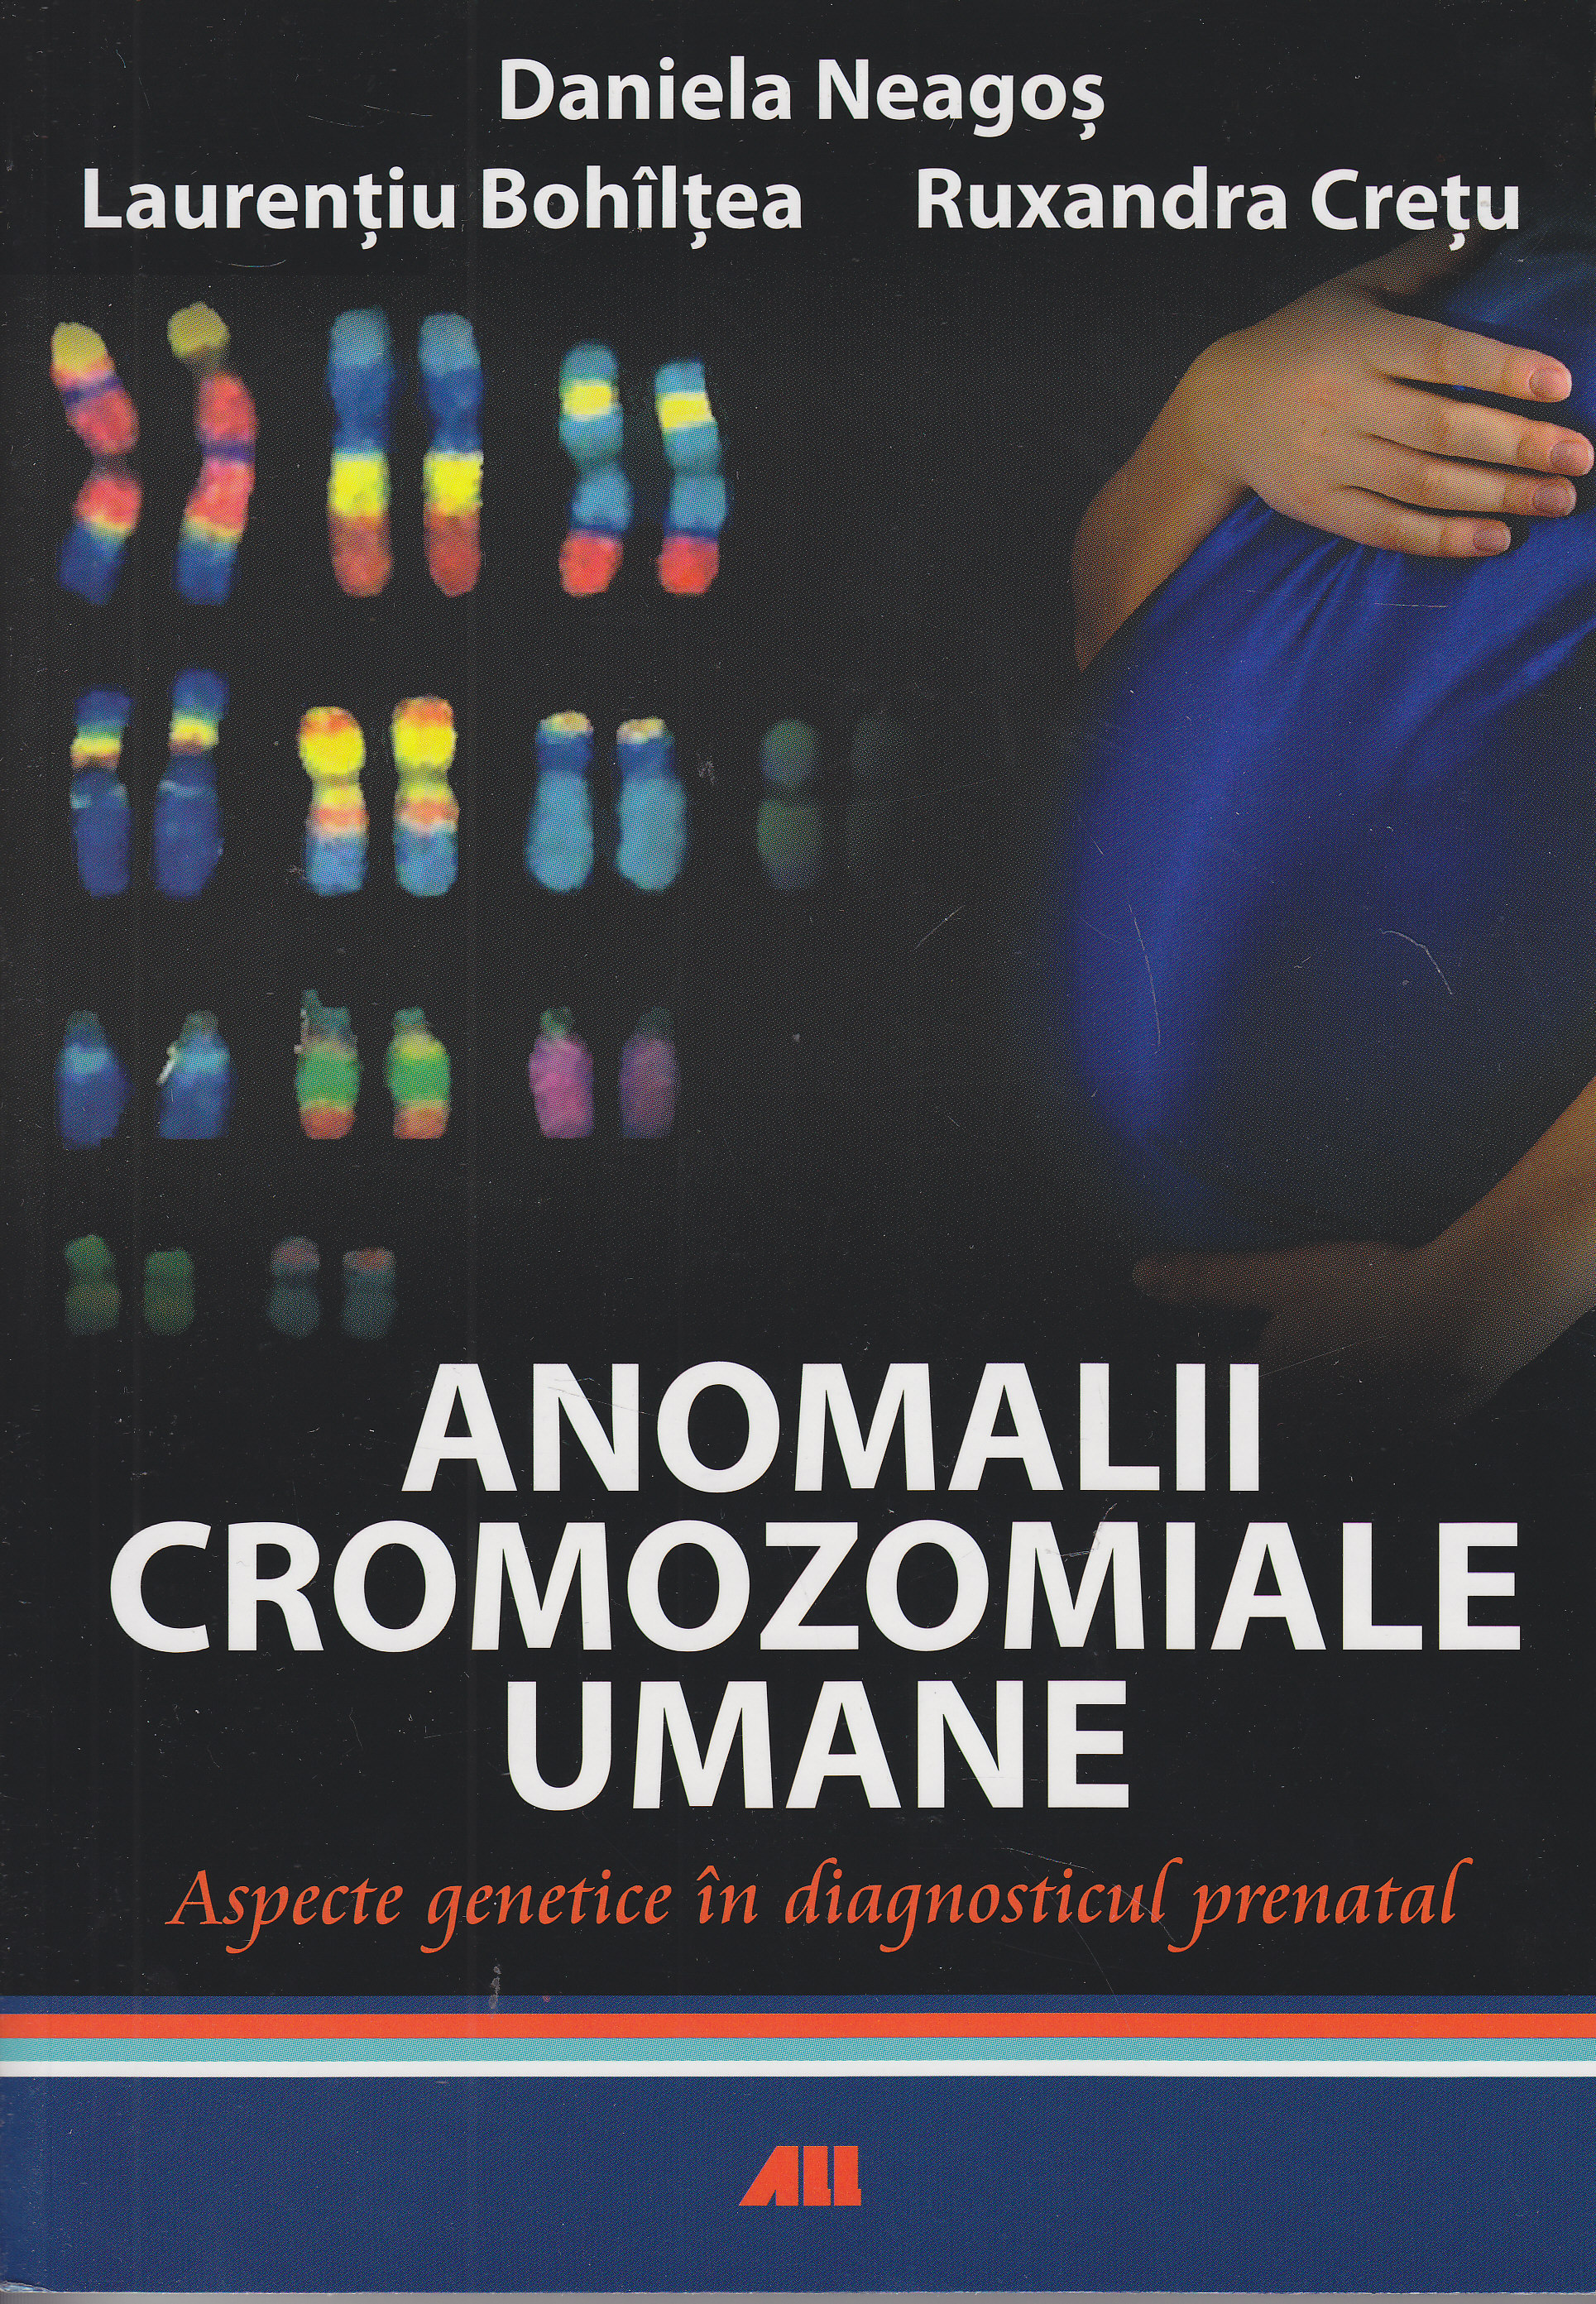 Anomalii cromozomiale umane - Daniela Neagos, Laurentiu Bohiltea, Ruxandra Cretu